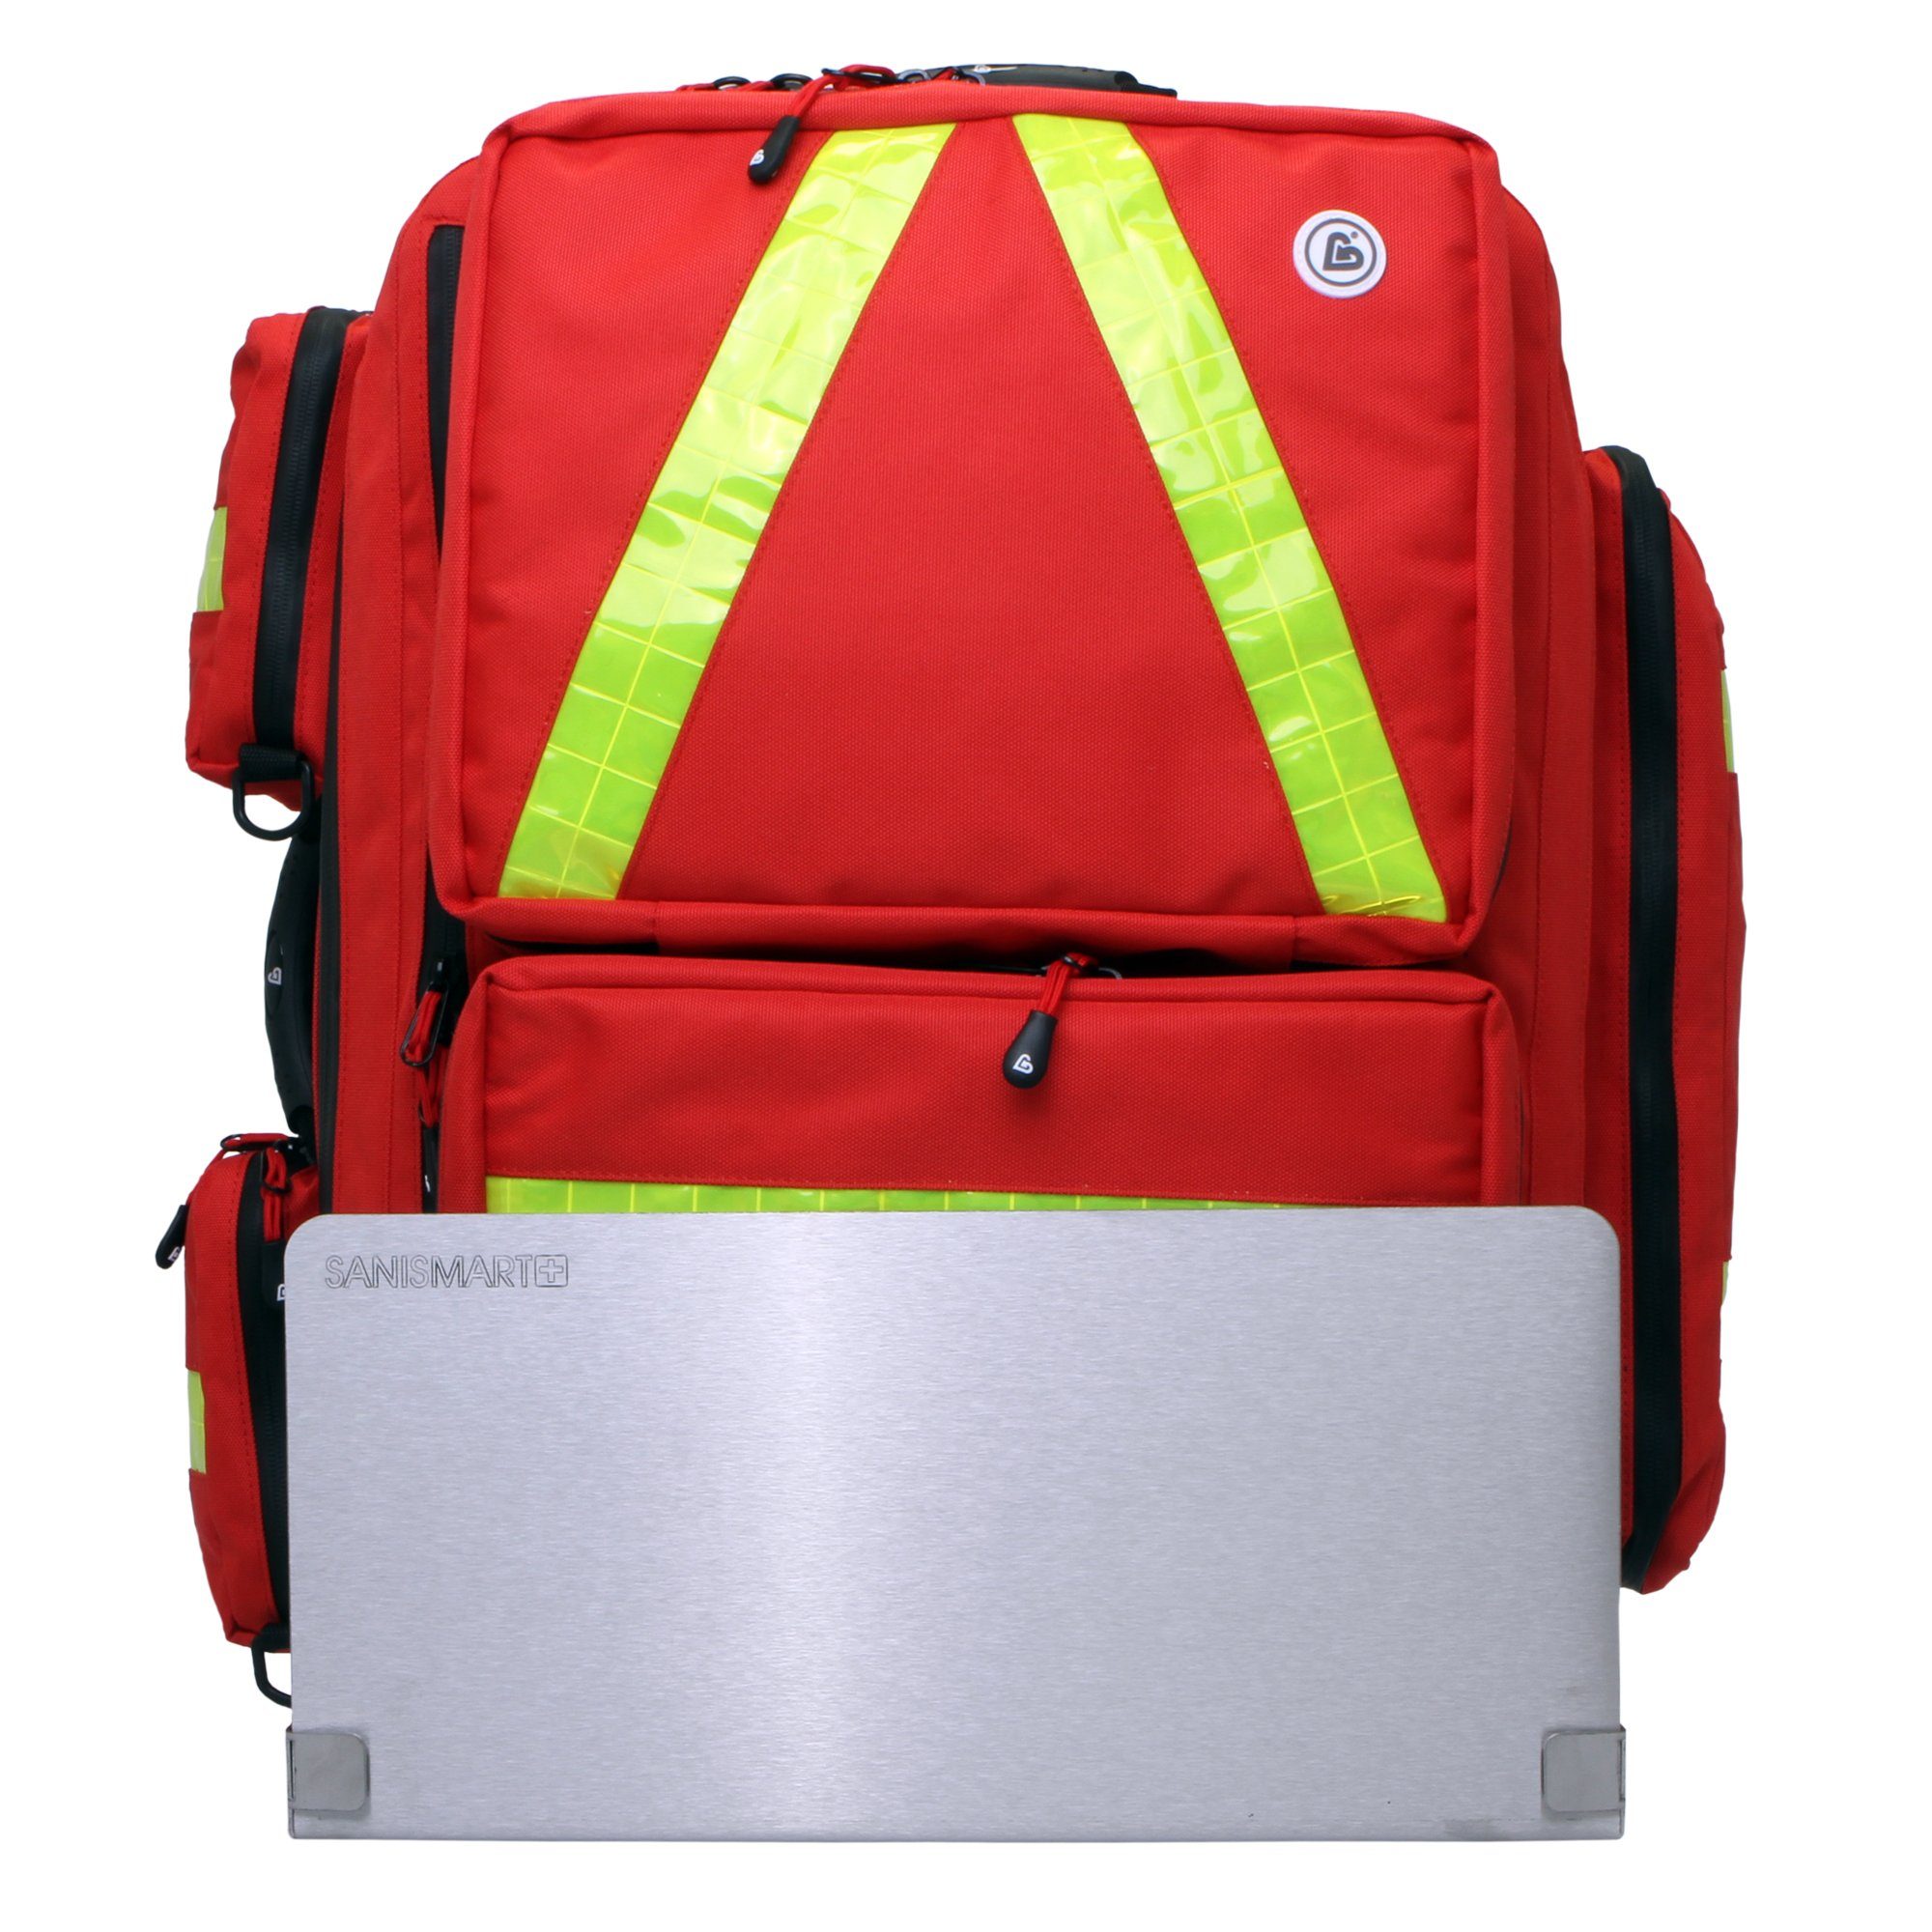 XL für Notfallrucksack Rot Nylon Notfallrucksäcke SANISMART Arzttasche mit Medicus Wandhalterung